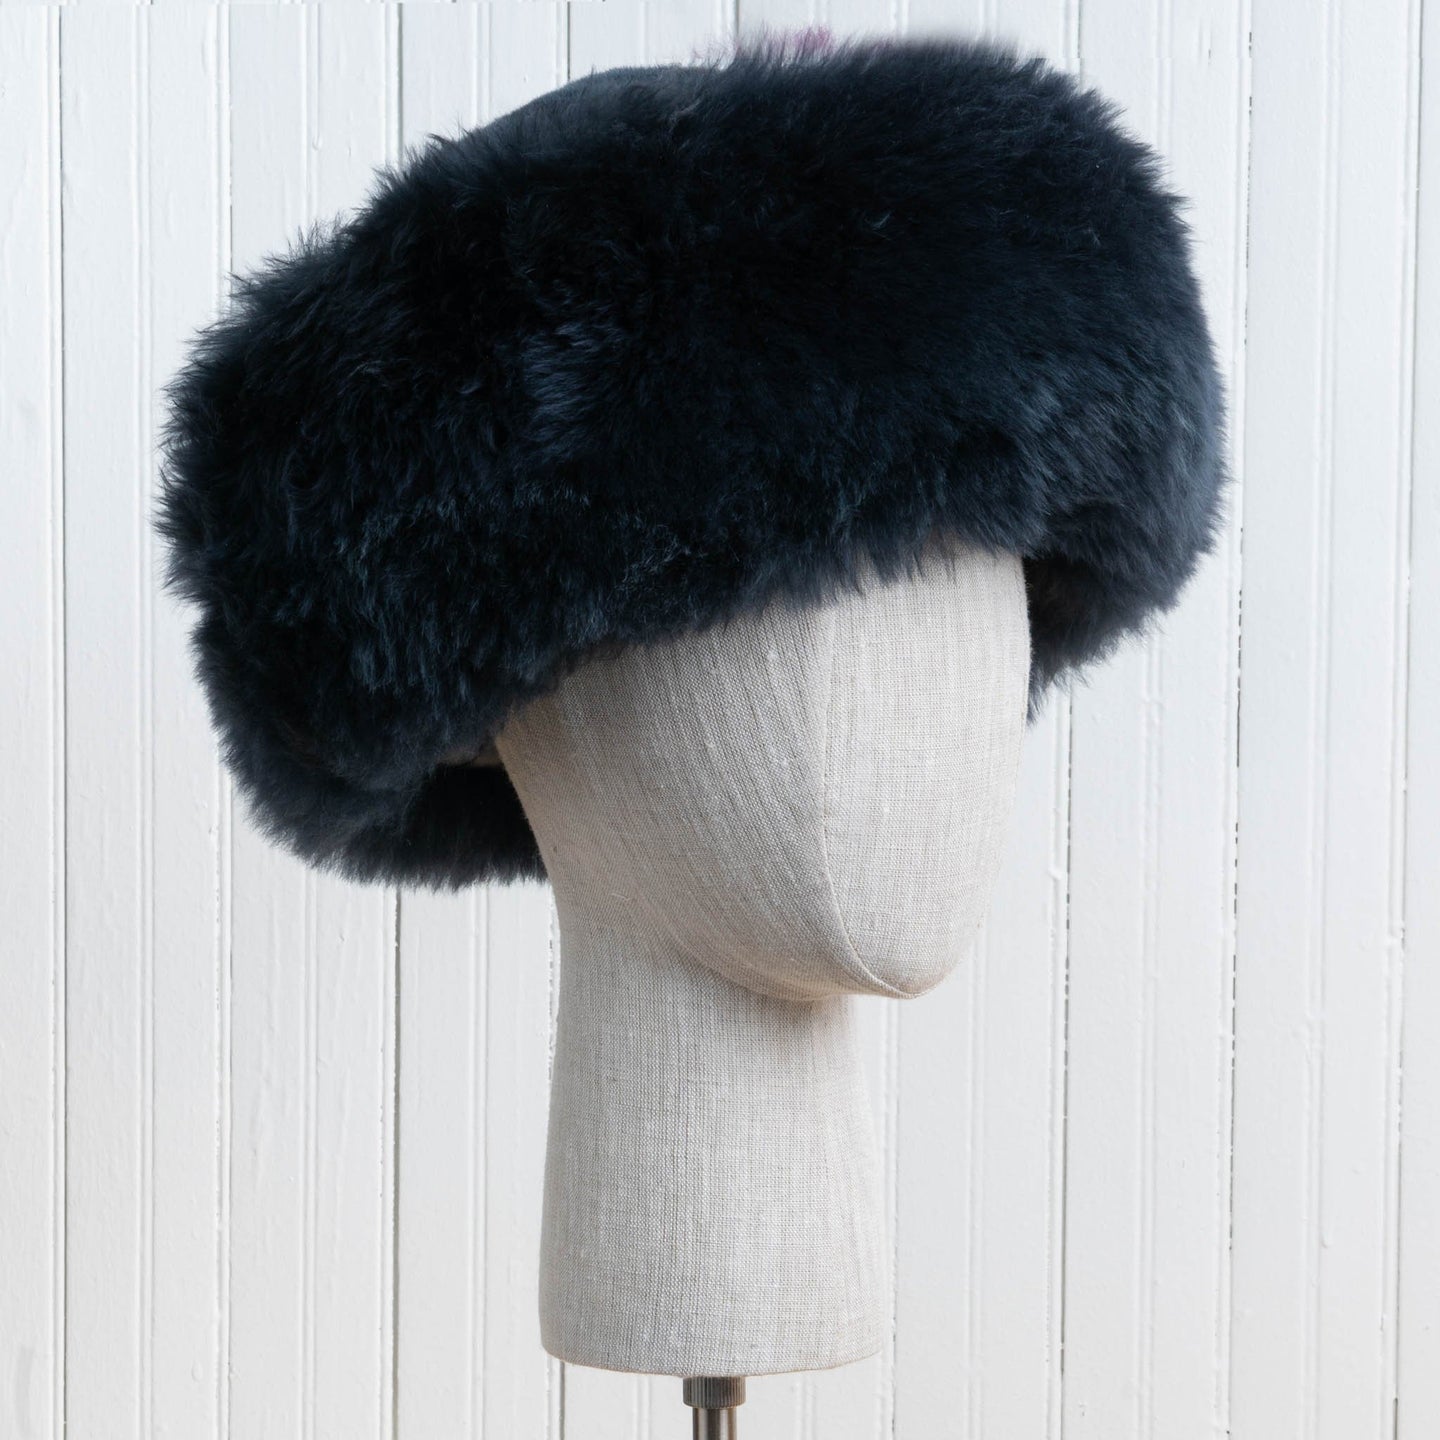 Traditional Fur Baby Alpaca Hat